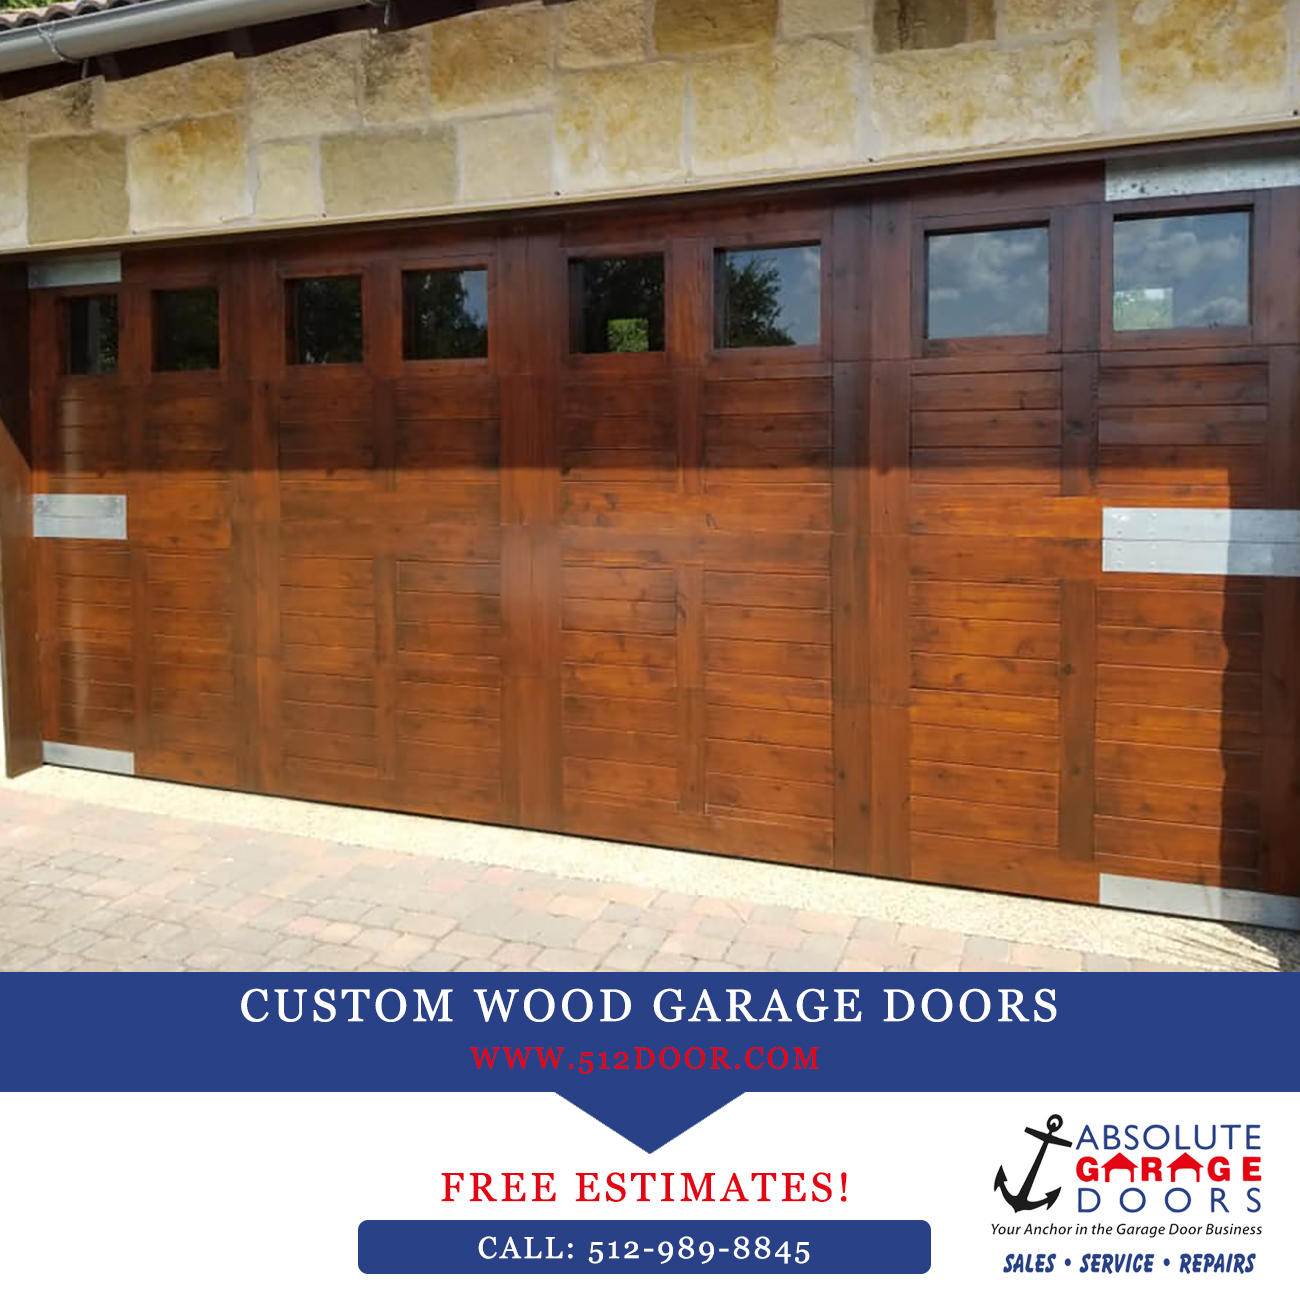 Georgetown TX wood garage doors by Absolute Garage Doors.